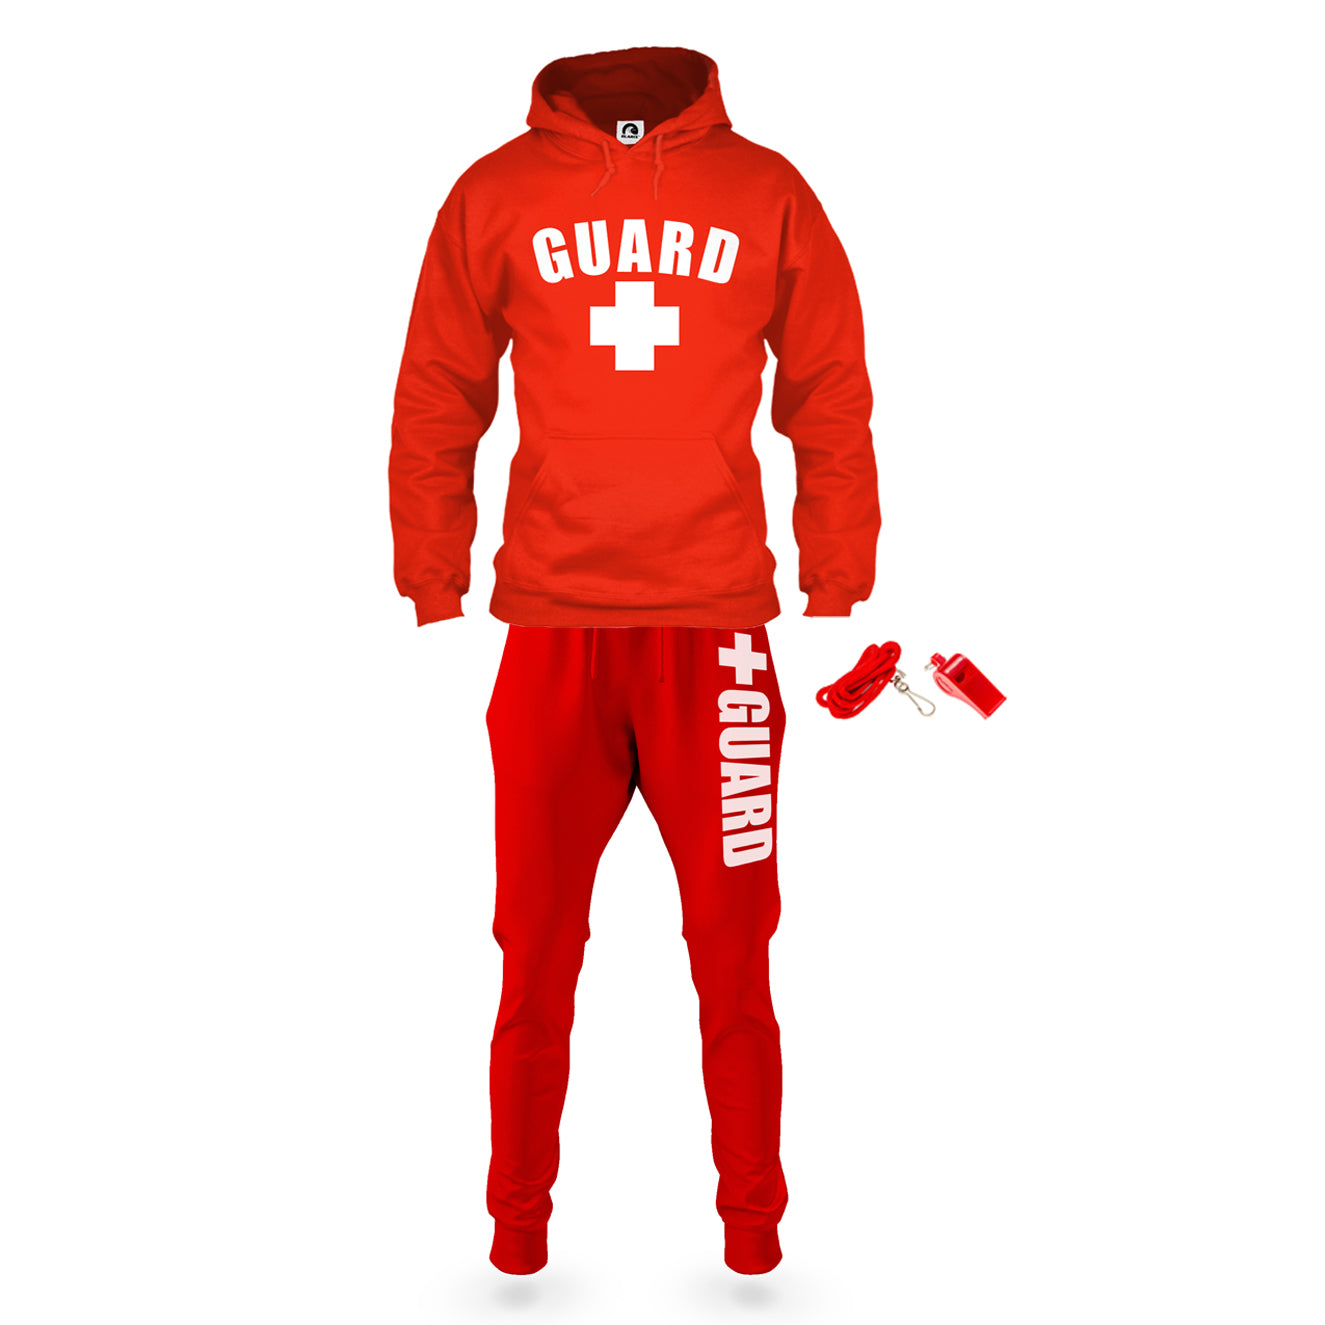 Lifeguard Sweatsuit Outfit - BLARIX